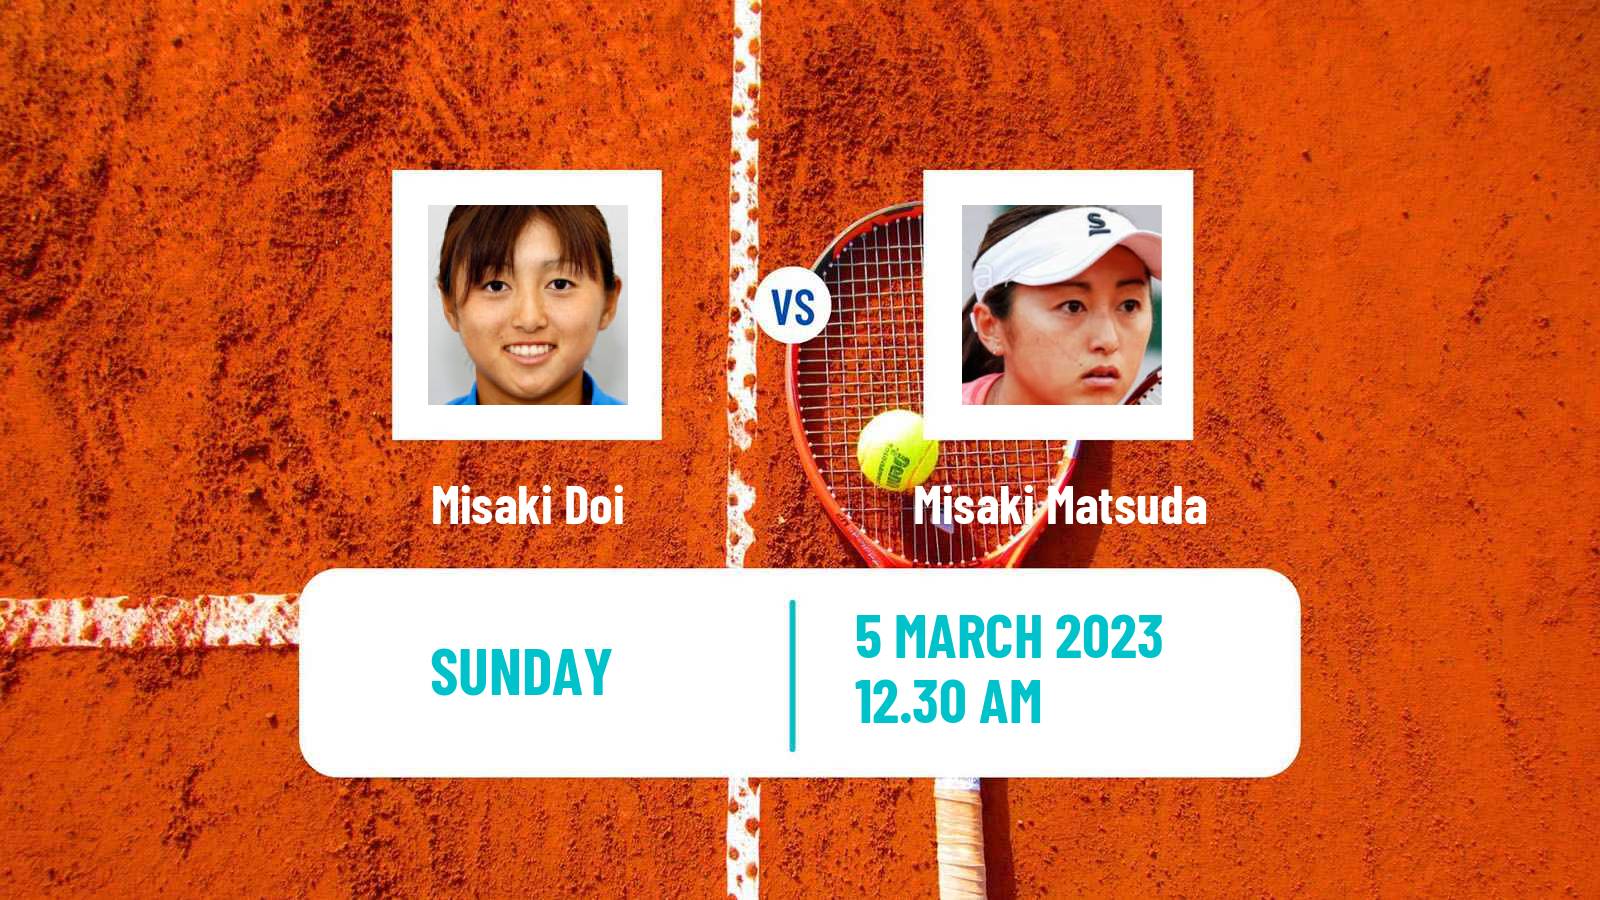 Tennis ITF Tournaments Misaki Doi - Misaki Matsuda